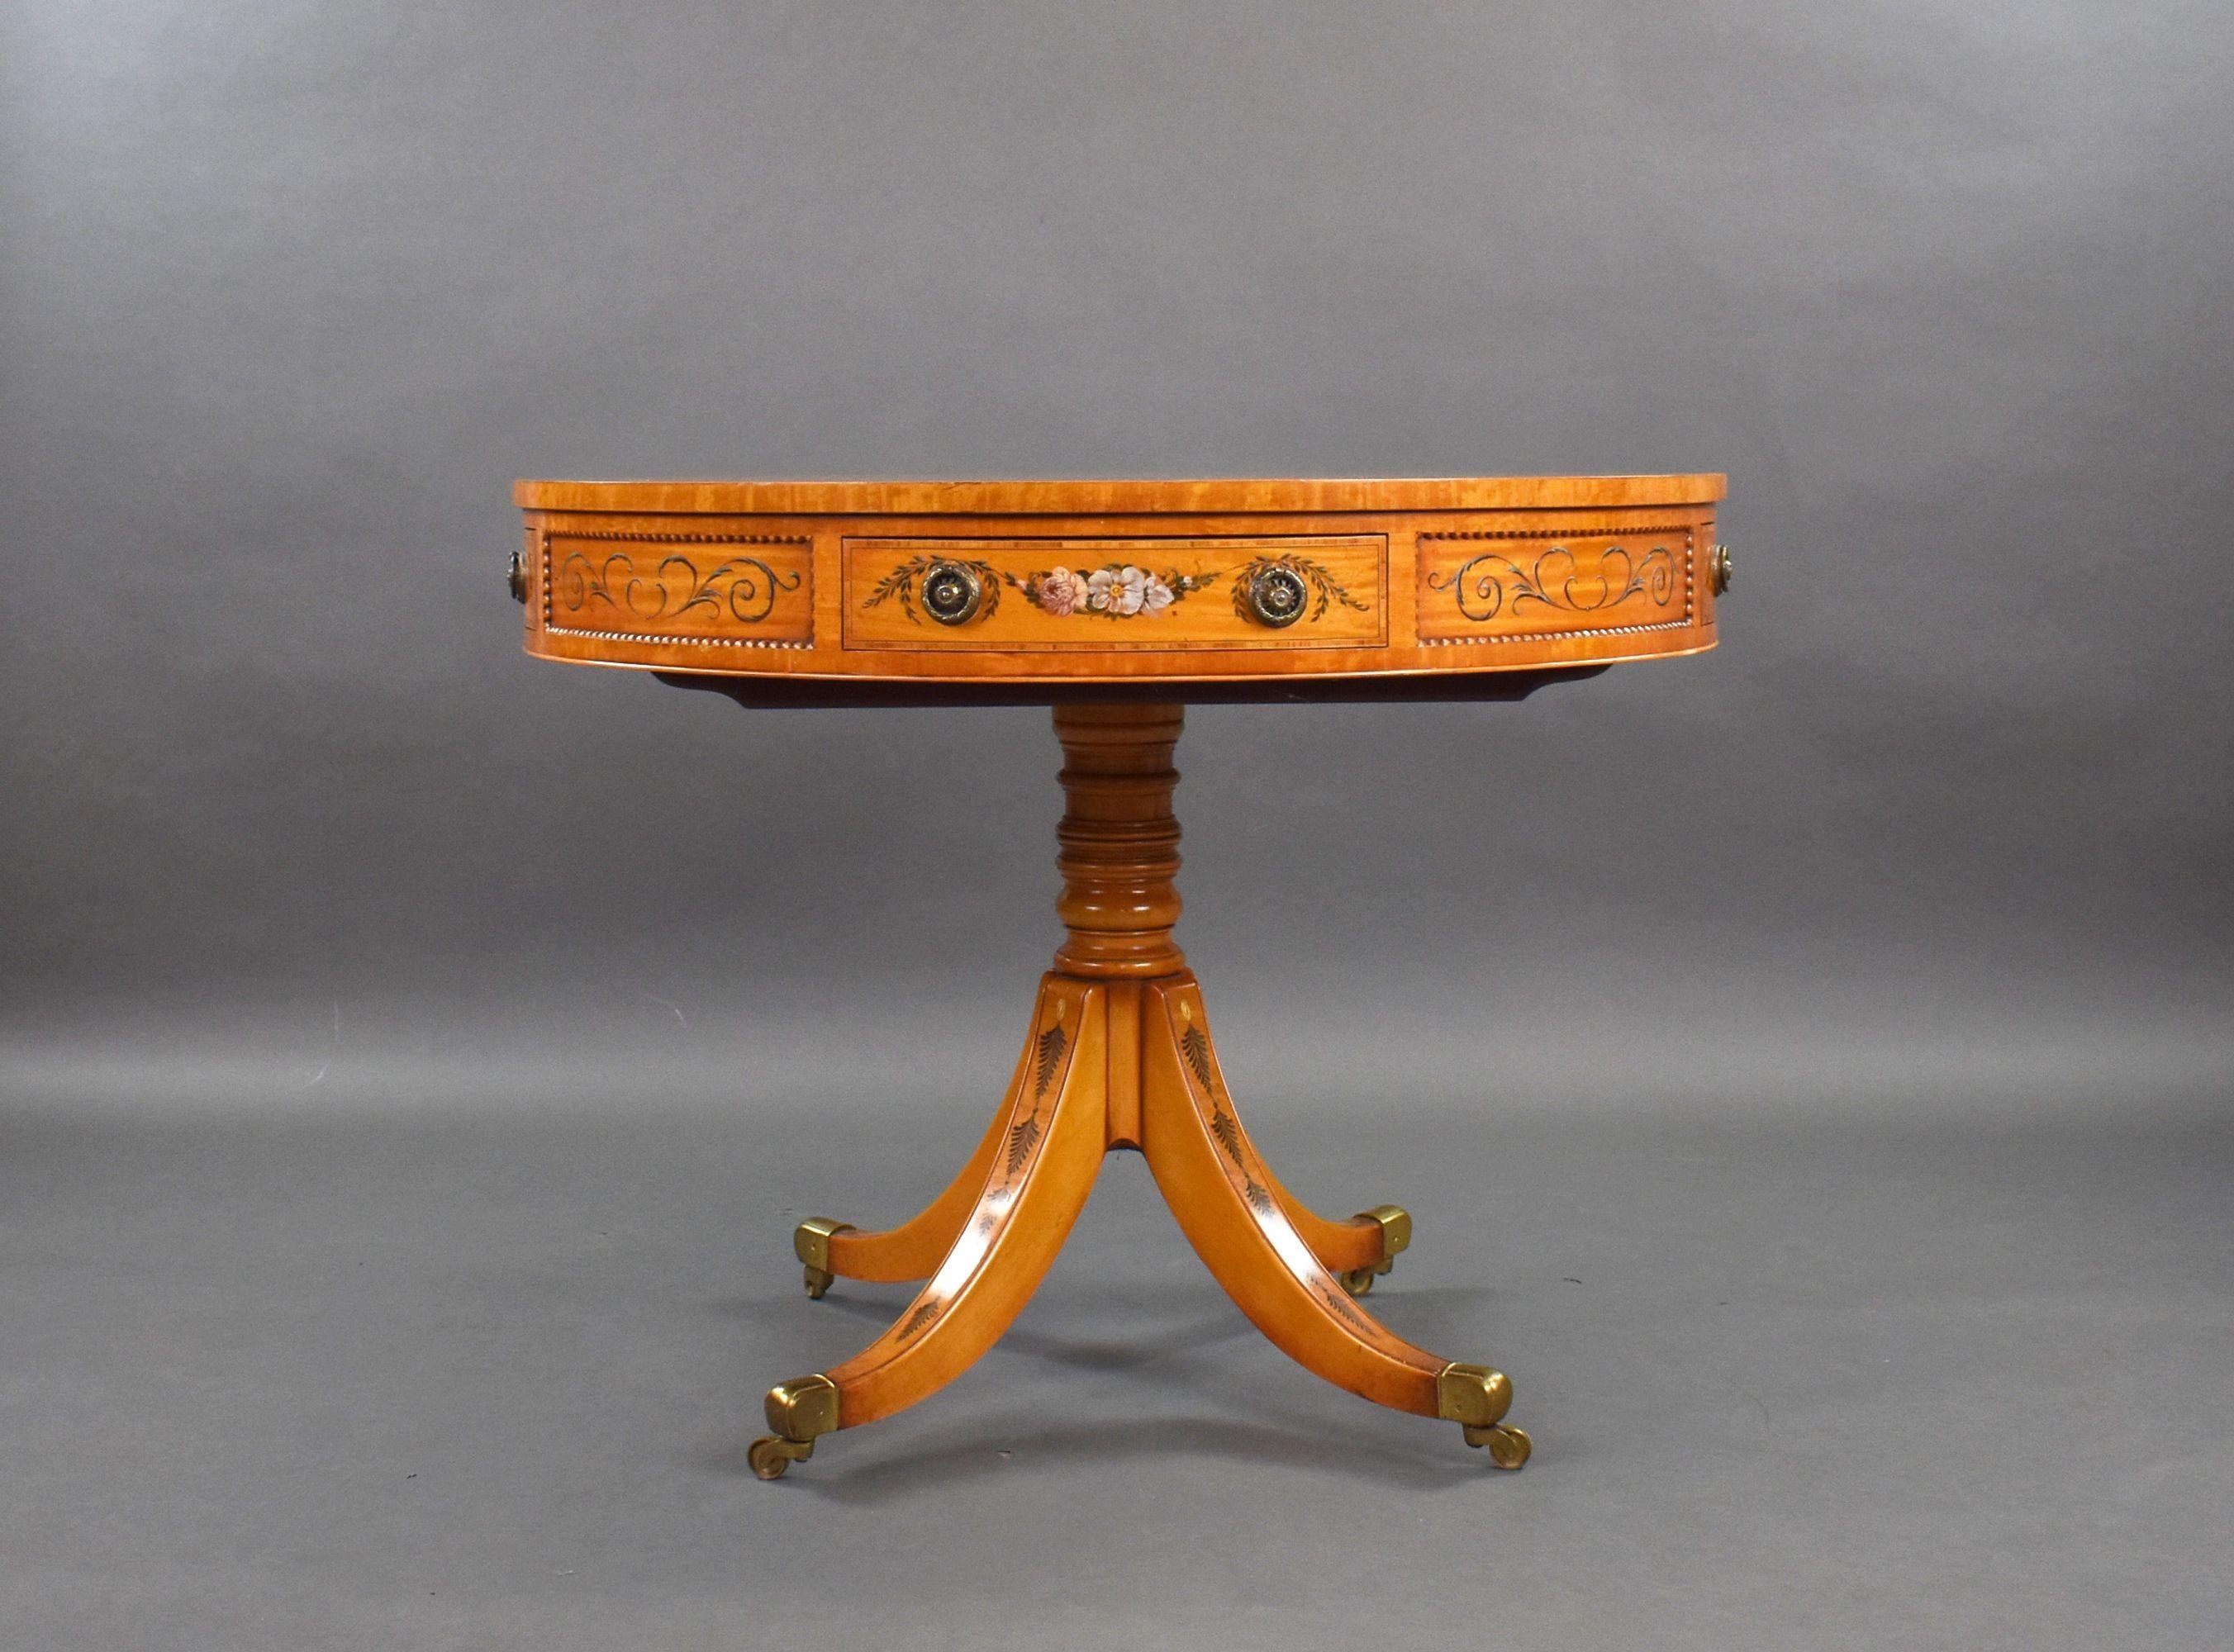 Il s'agit d'une table de tambour en bois satiné de bonne qualité, peinte à la main et datant de l'époque édouardienne. Elle présente une décoration florale au centre et sur les bords du plateau, au-dessus de quatre tiroirs, sur une tige tournée